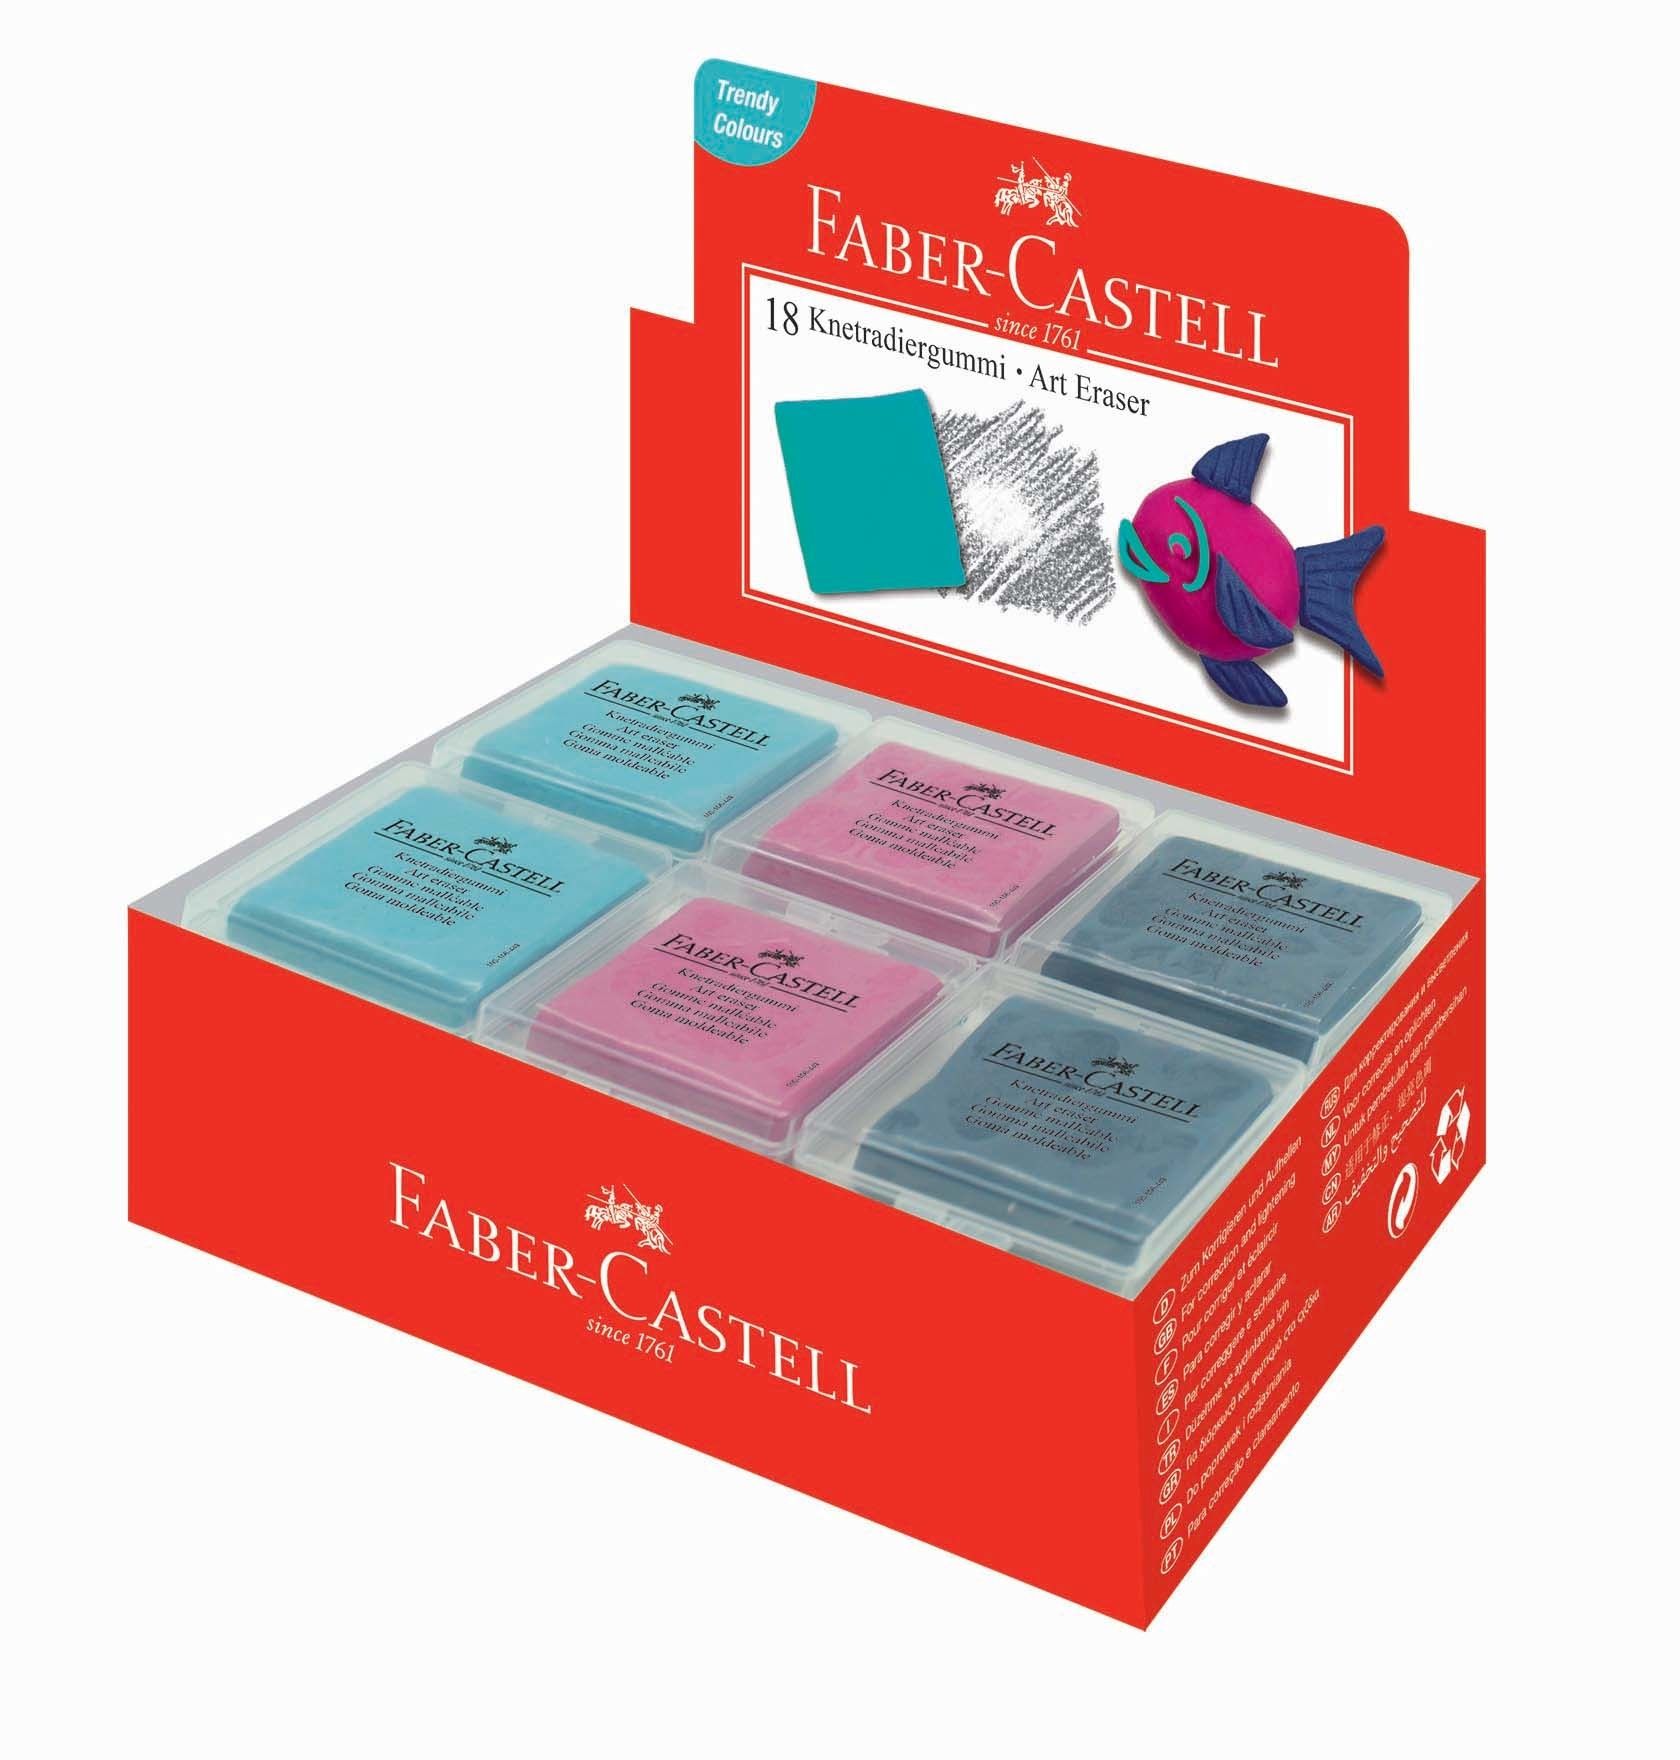 Faber-Castell Knetgummi ART ERASER farbig sortiert multicolor